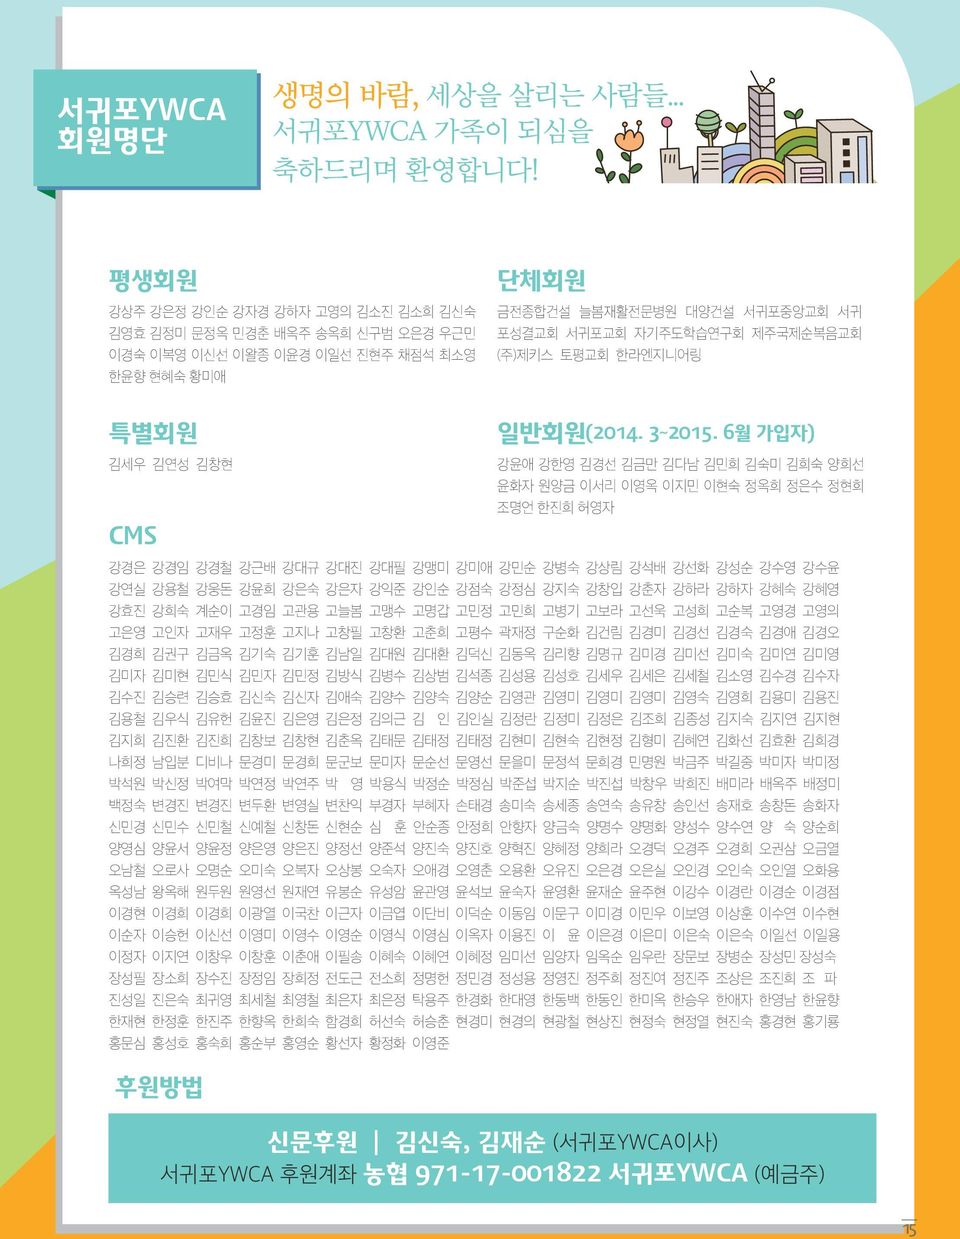 (주)제키스 토평교회 한라엔지니어링 특별회원 일반회원(2014. 3~2015.